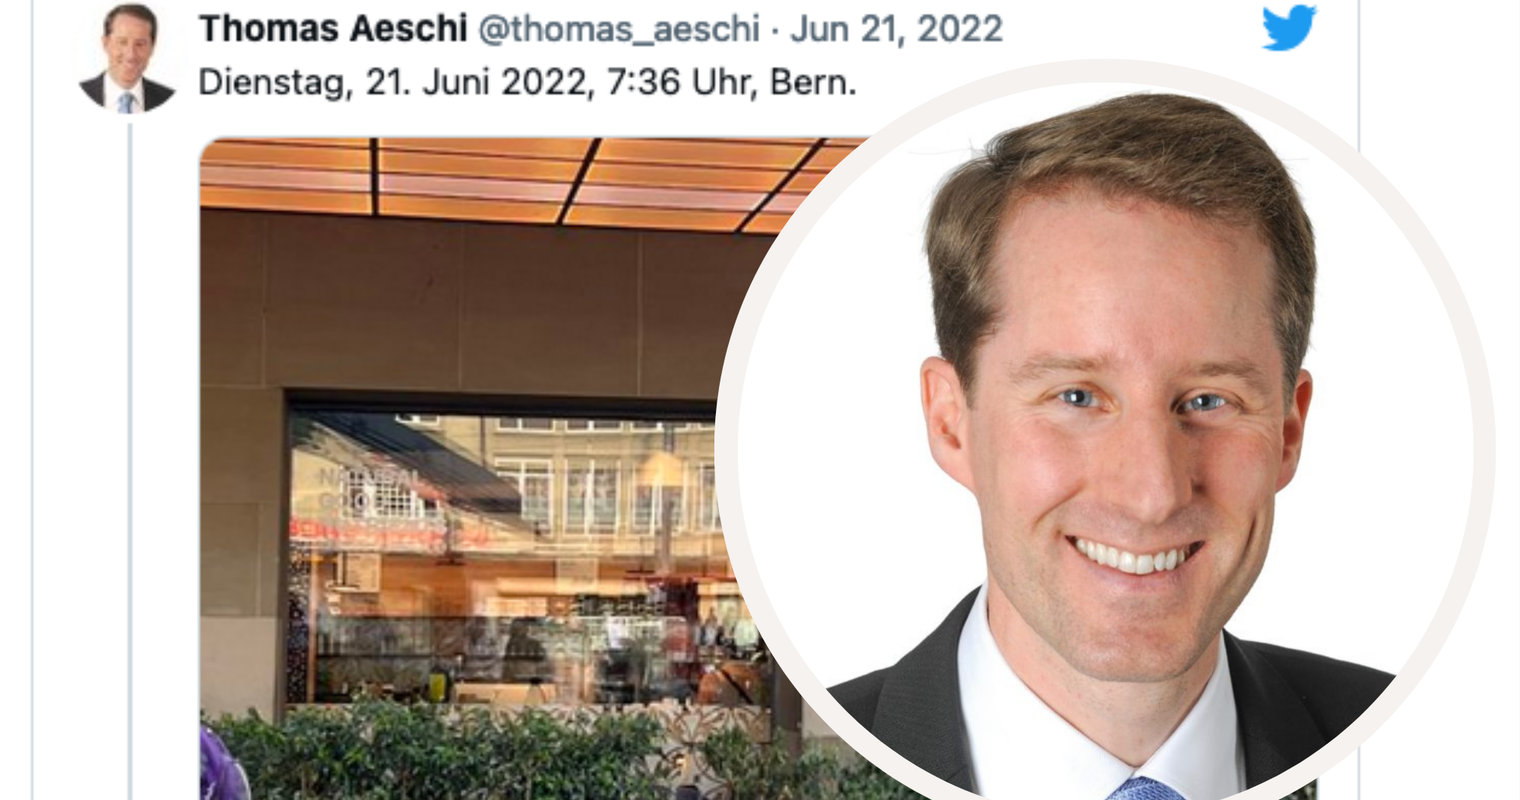 Thomas Aeschi löst erneut einen Shitstorm auf Twitter aus